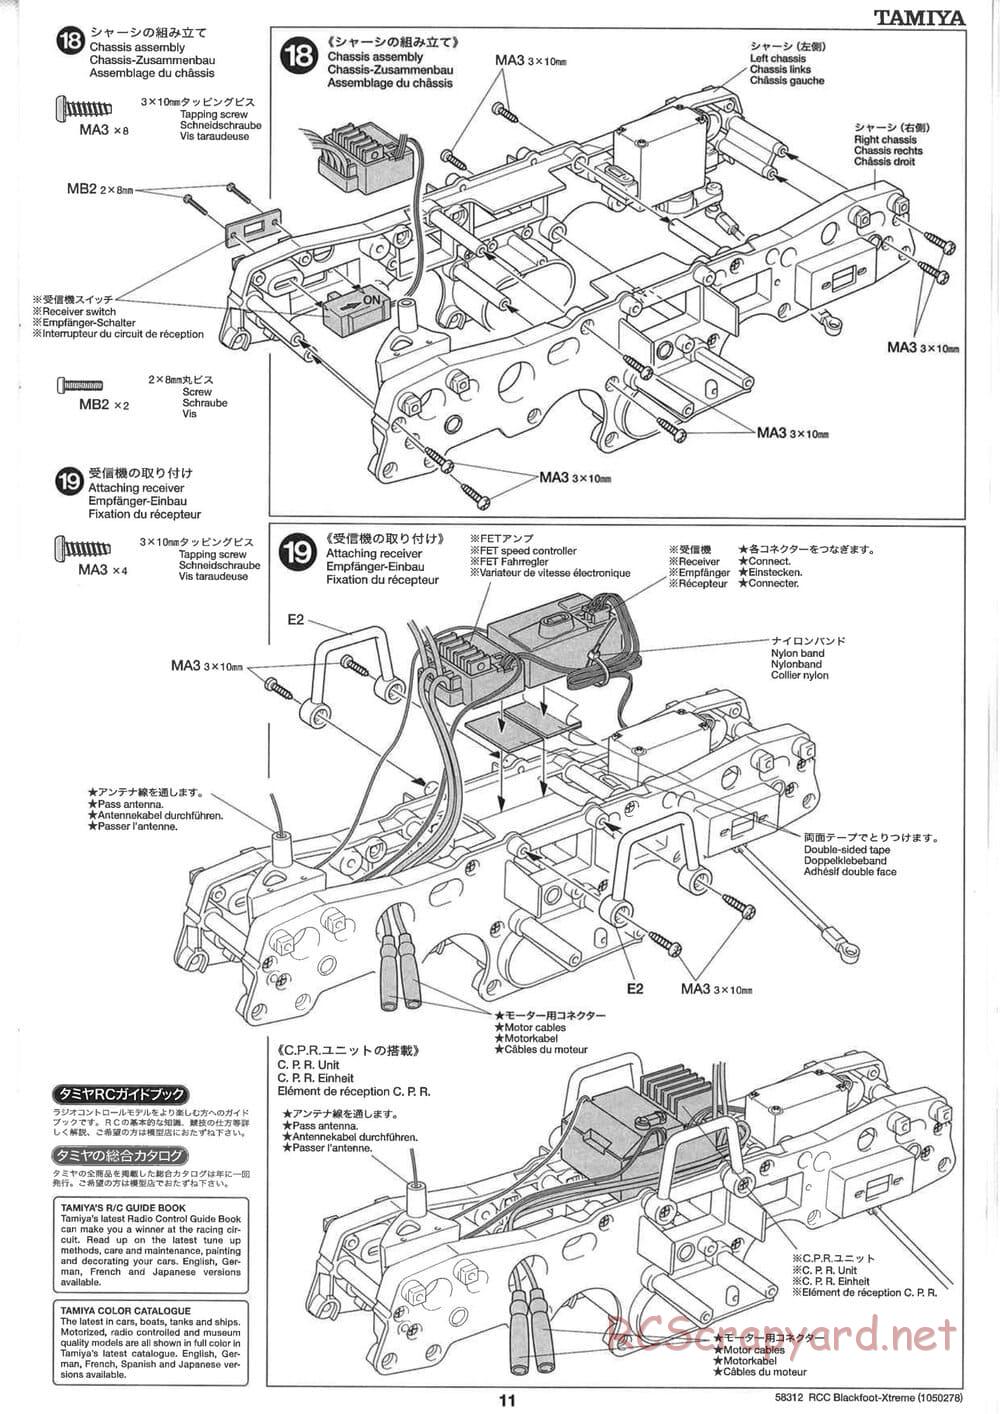 Tamiya - Blackfoot Xtreme - WT-01 Chassis - Manual - Page 11